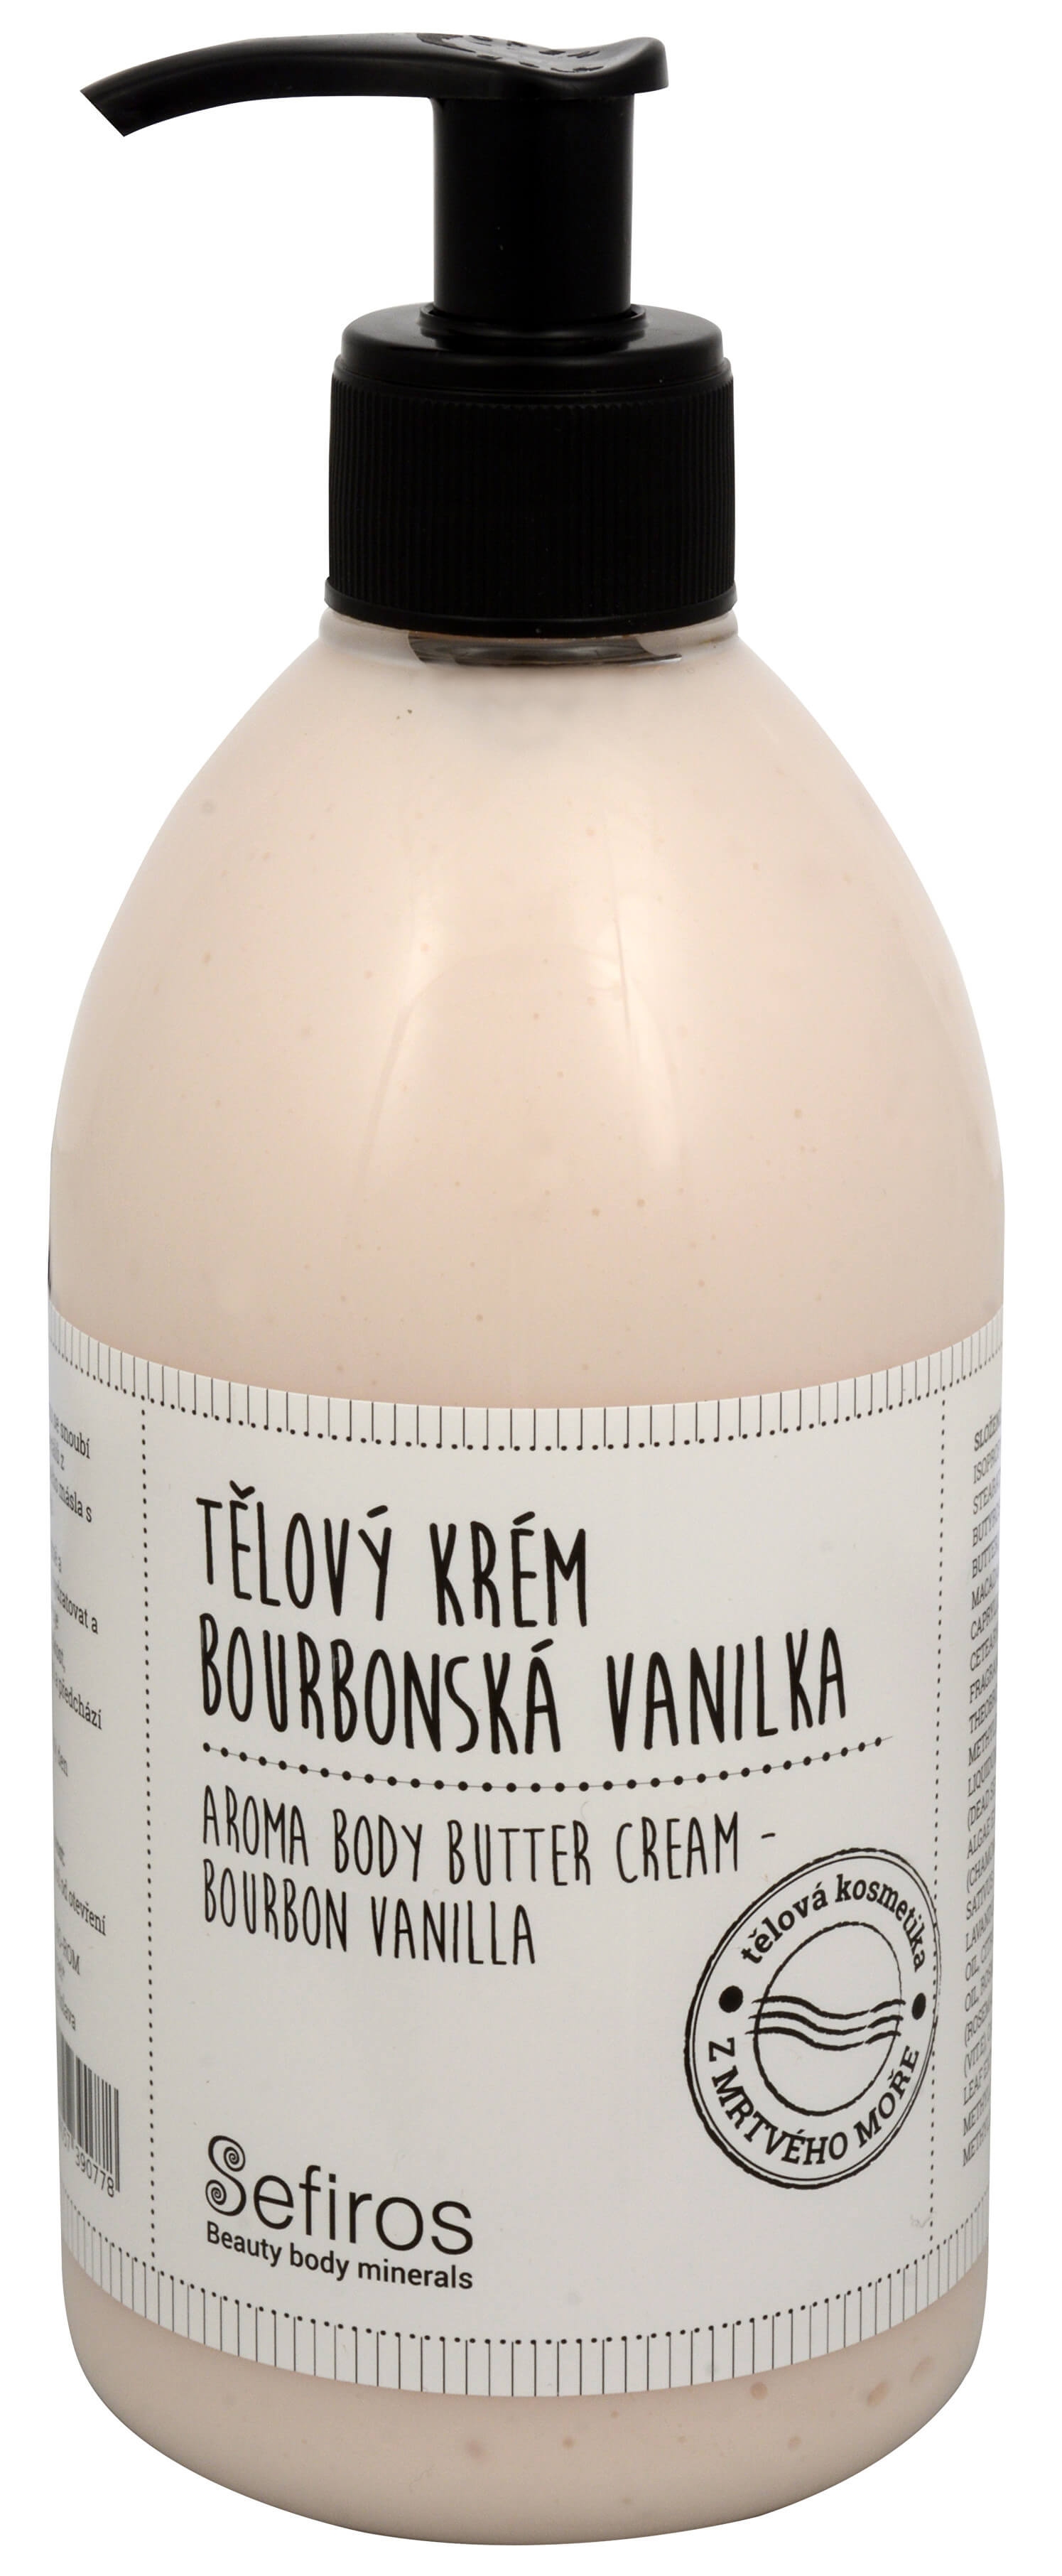 Zobrazit detail výrobku Sefiross Tělový krém Bourbonská vanilka (Aroma Body Butter Cream) 500 ml